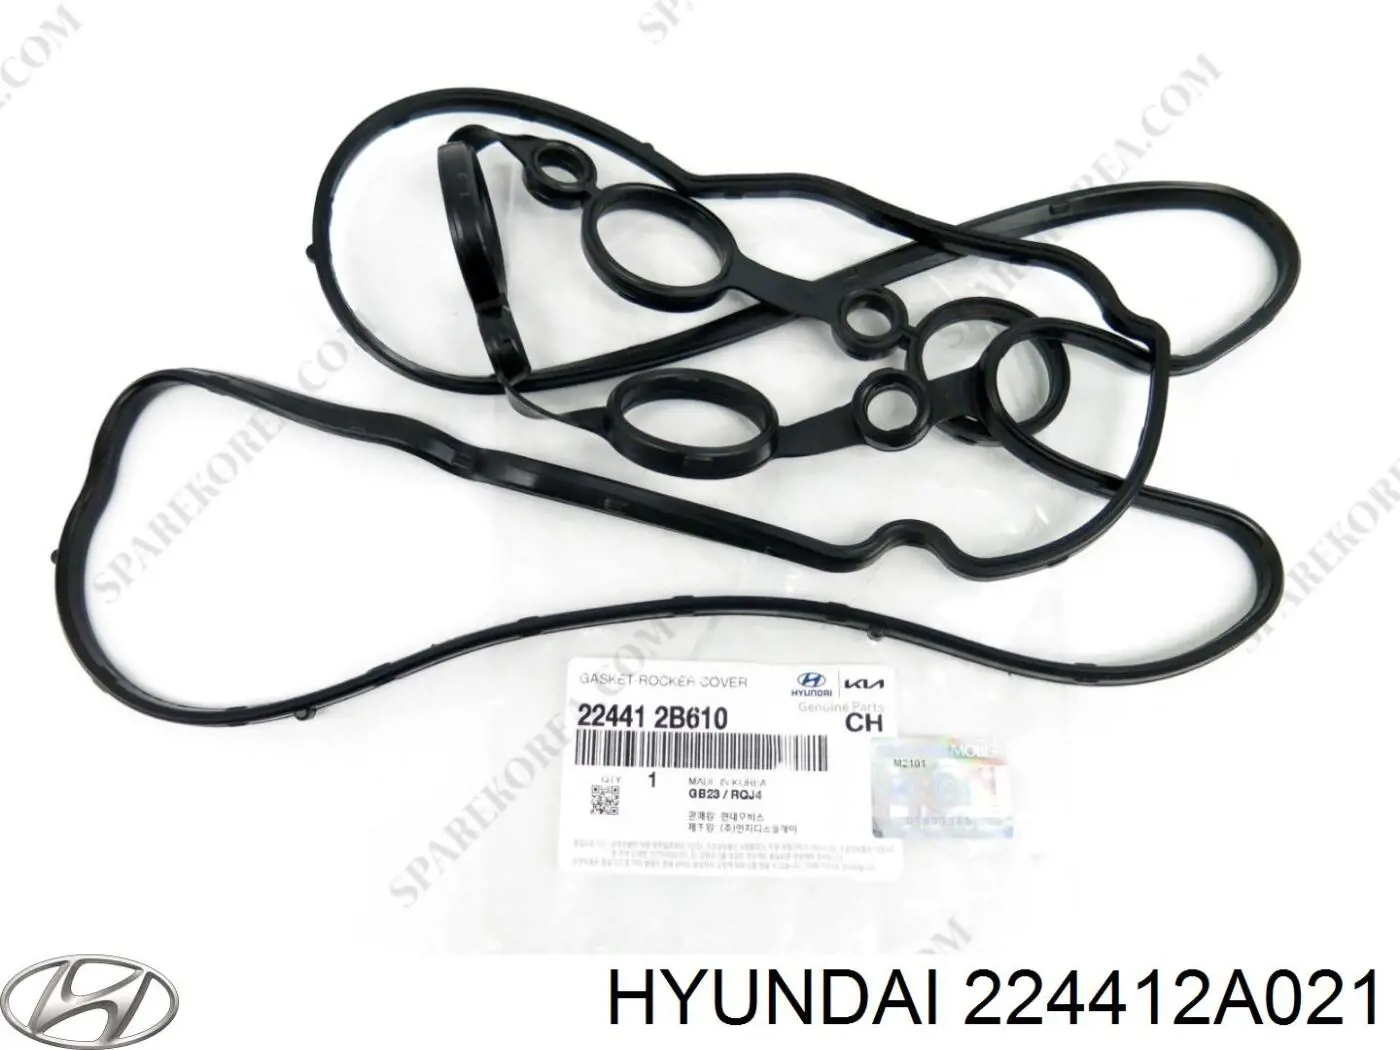 224412A021 Hyundai/Kia junta, tapa de culata de cilindro, anillo de junta